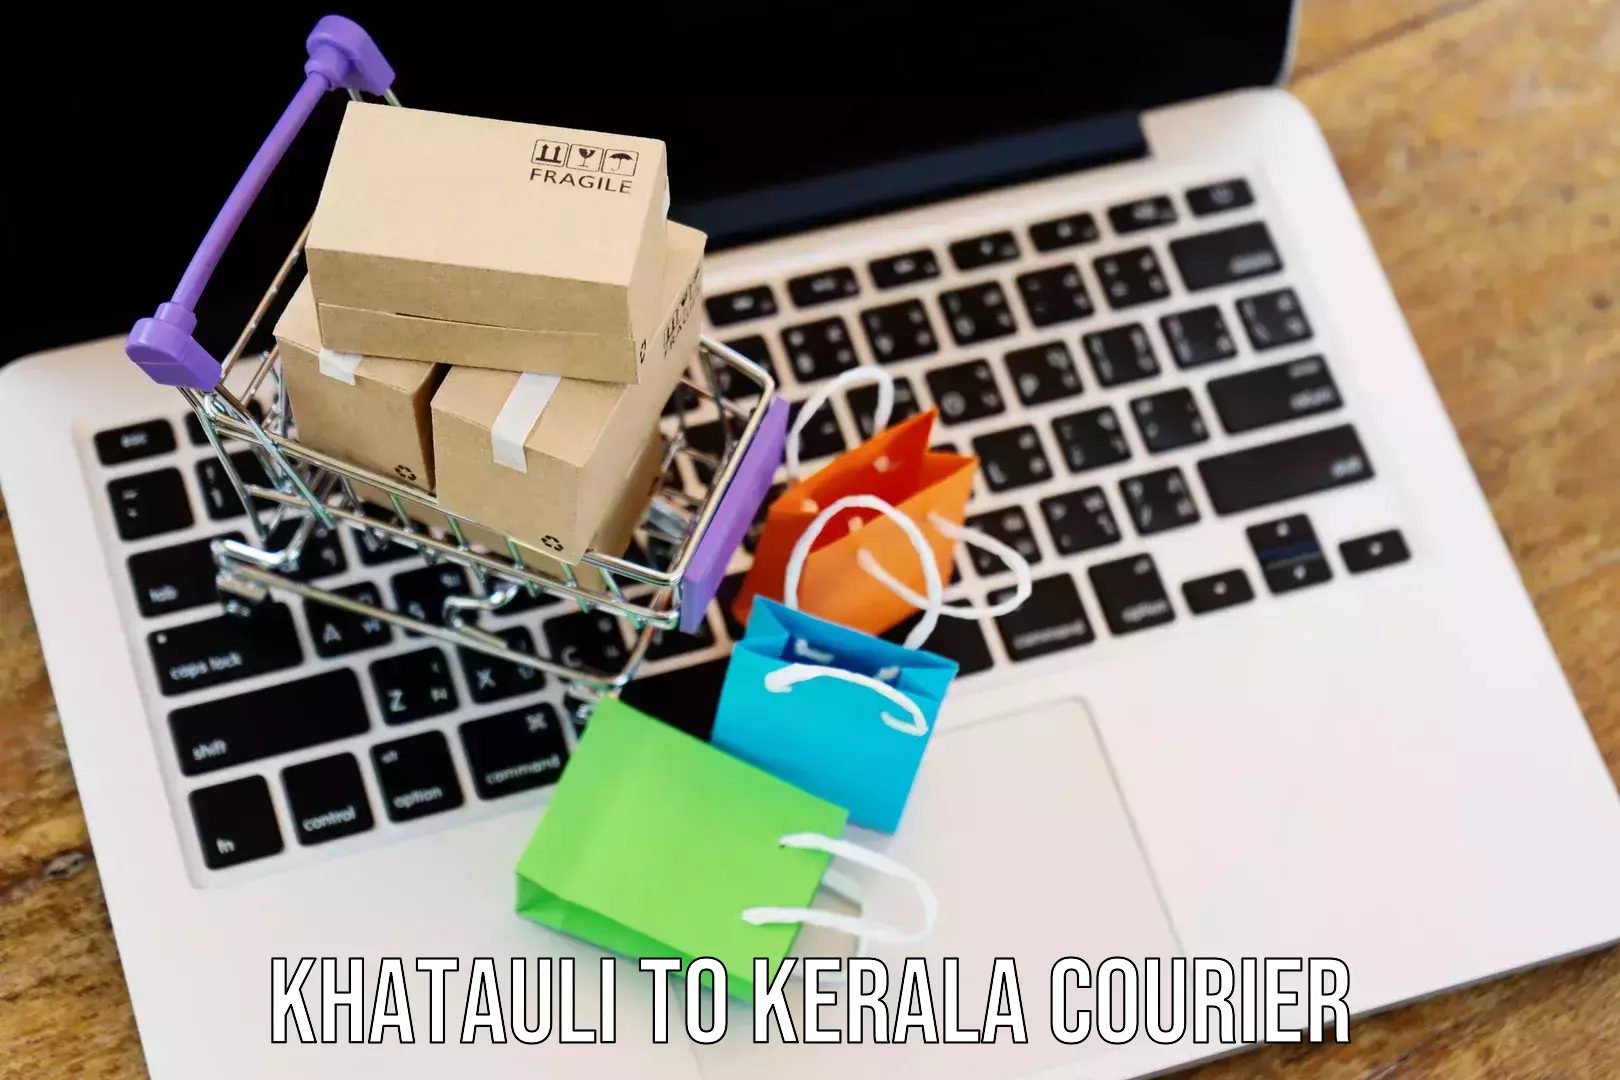 Modern delivery methods Khatauli to Kerala